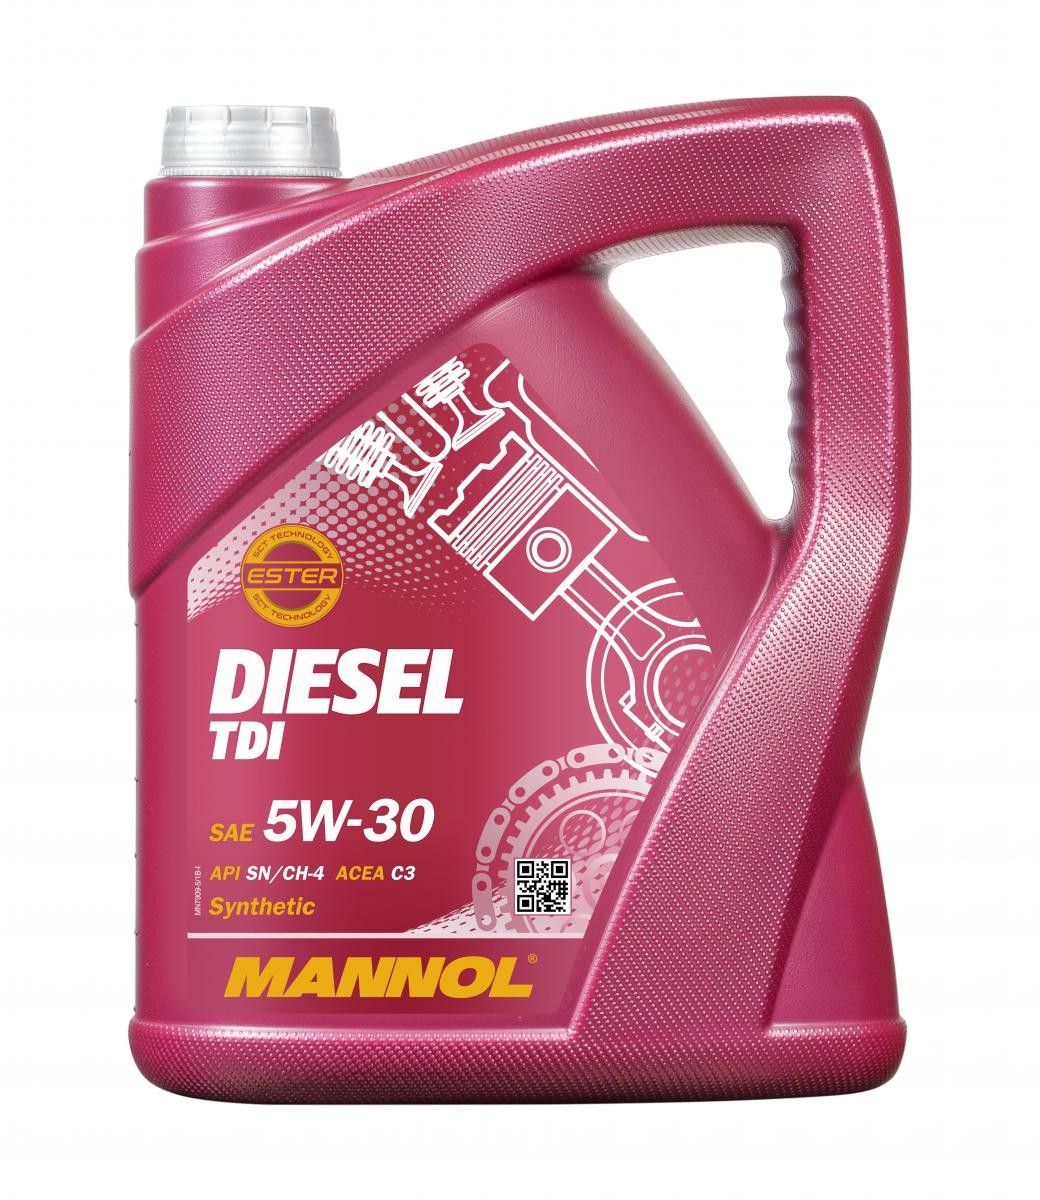 MANNOL DIESEL TDI MN7909-5 Motorolie 5W-30, 5L, Synthetische olie